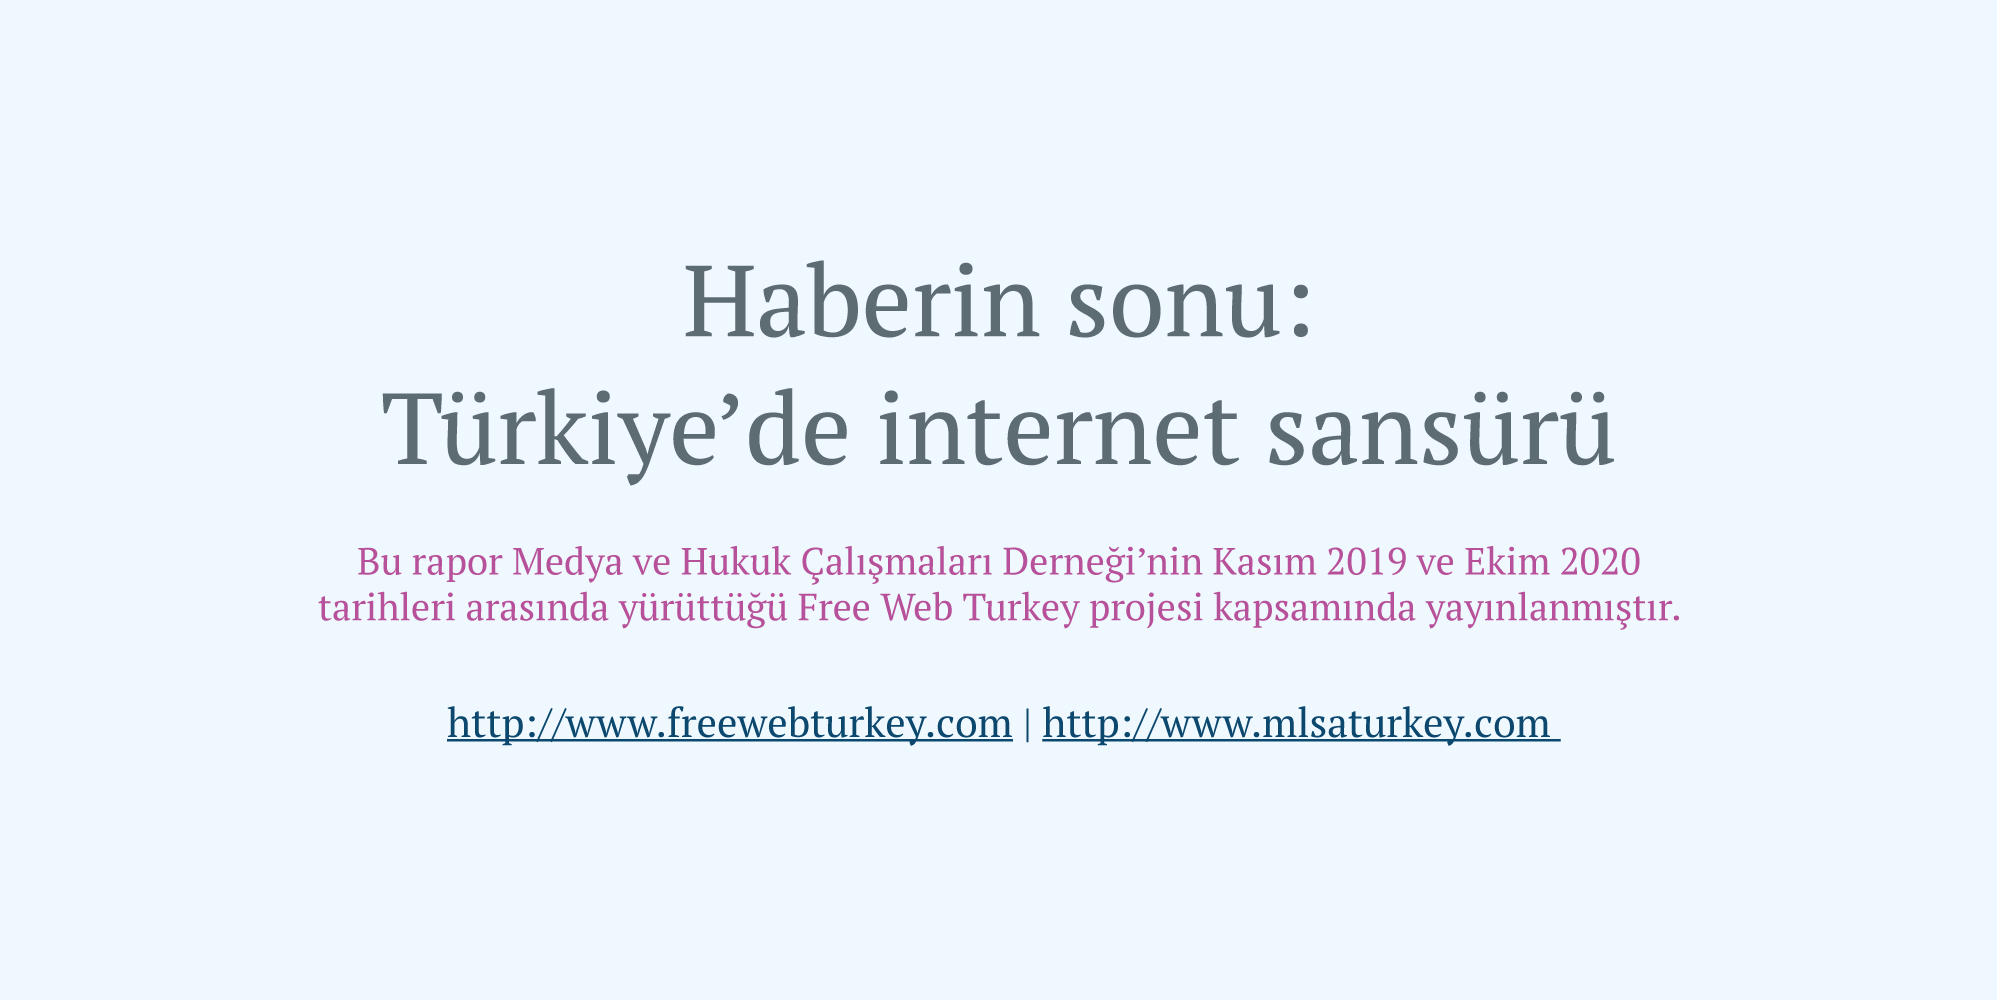 Free Web Turkey raporu: Engellenen haberlerin %42’si iktidar ve çevresiyle ilgili